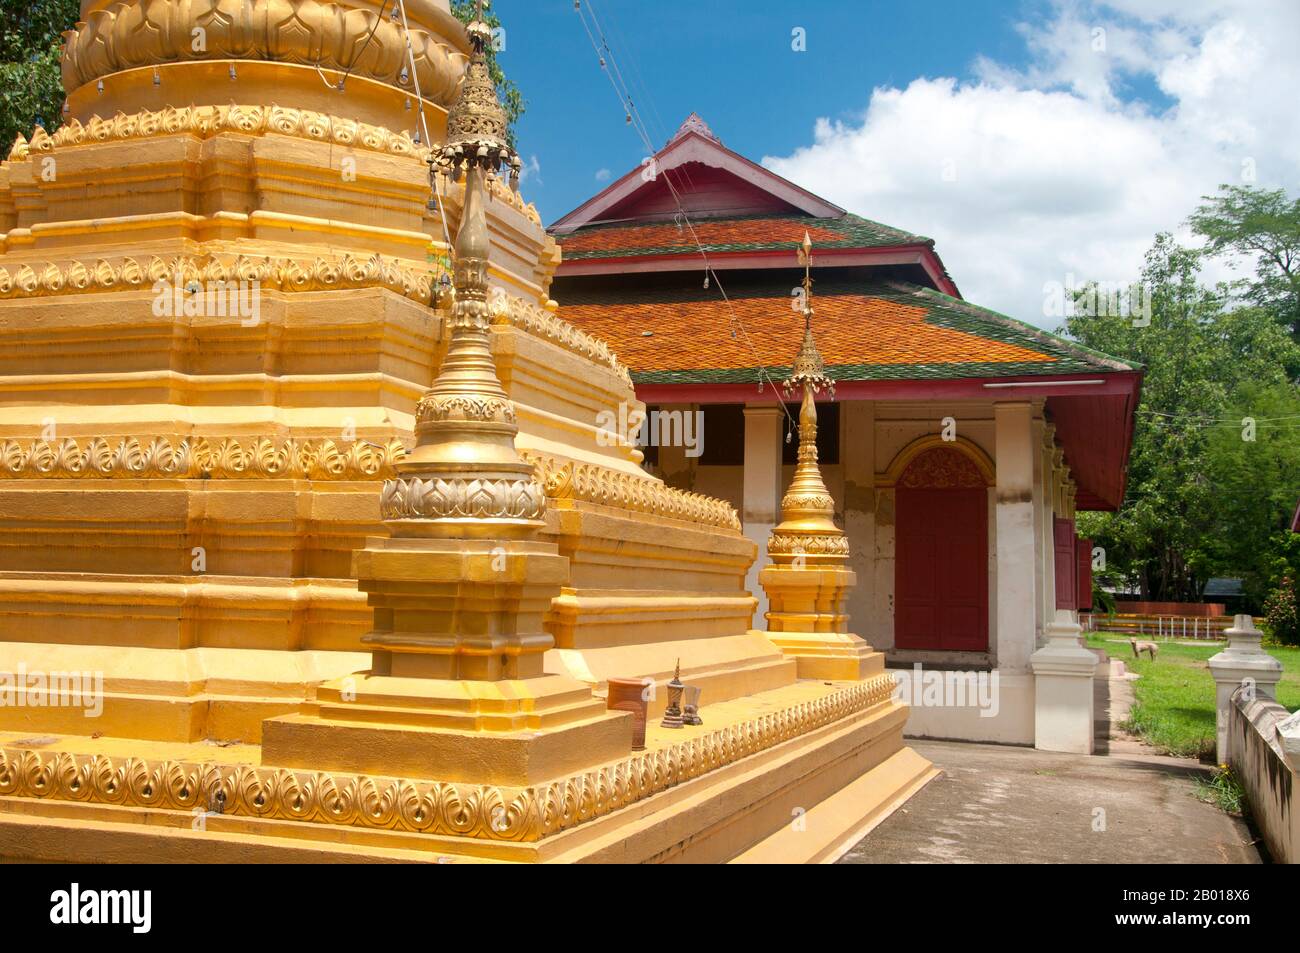 Tailandia: El templo birmano de Wat Sai Mun Myanmar, Chiang Mai. En la esquina sudeste de la vieja ciudad de Chiang Mai se encuentra Wat Myanmar, un buen ejemplo de un templo birmano del siglo 19th que no miraría fuera de lugar en Mandalay. Este templo está asociado principalmente con la tradición de las tierras bajas de Burman en la ciudad, y fotos de la pagoda Shwedagon y la pagoda Sule en Yangon (Rangún) adornan las paredes. Foto de stock